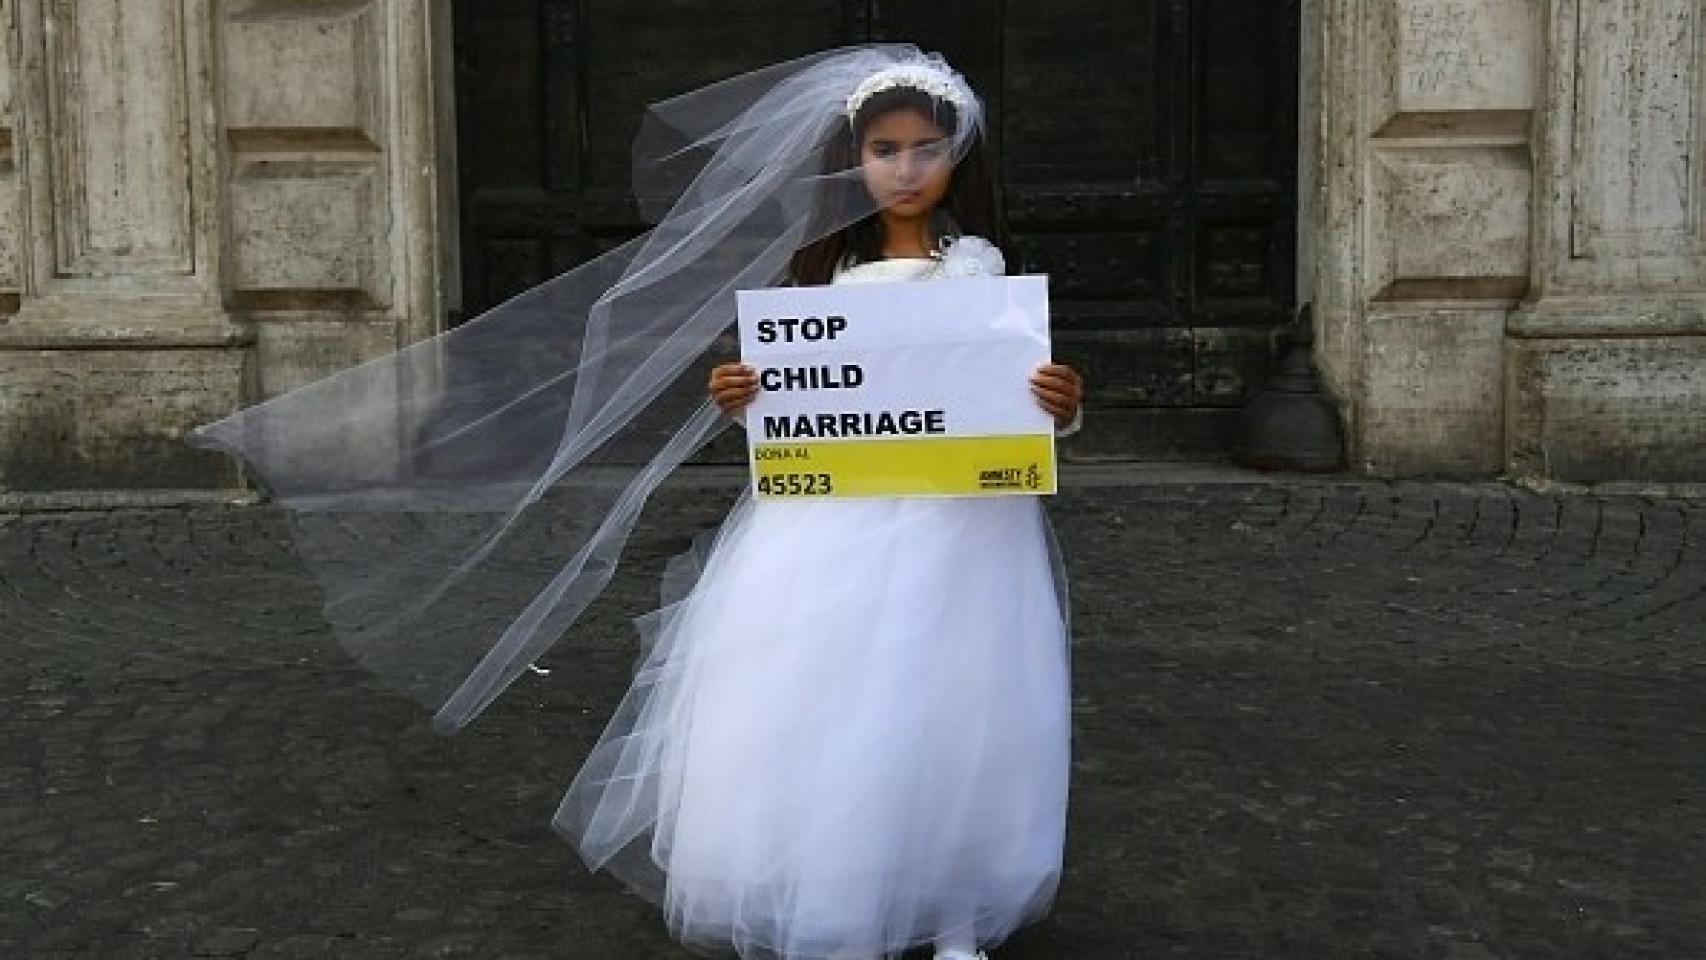 La batalla contra el matrimonio infantil en EEUU cuando violar niñas es legal